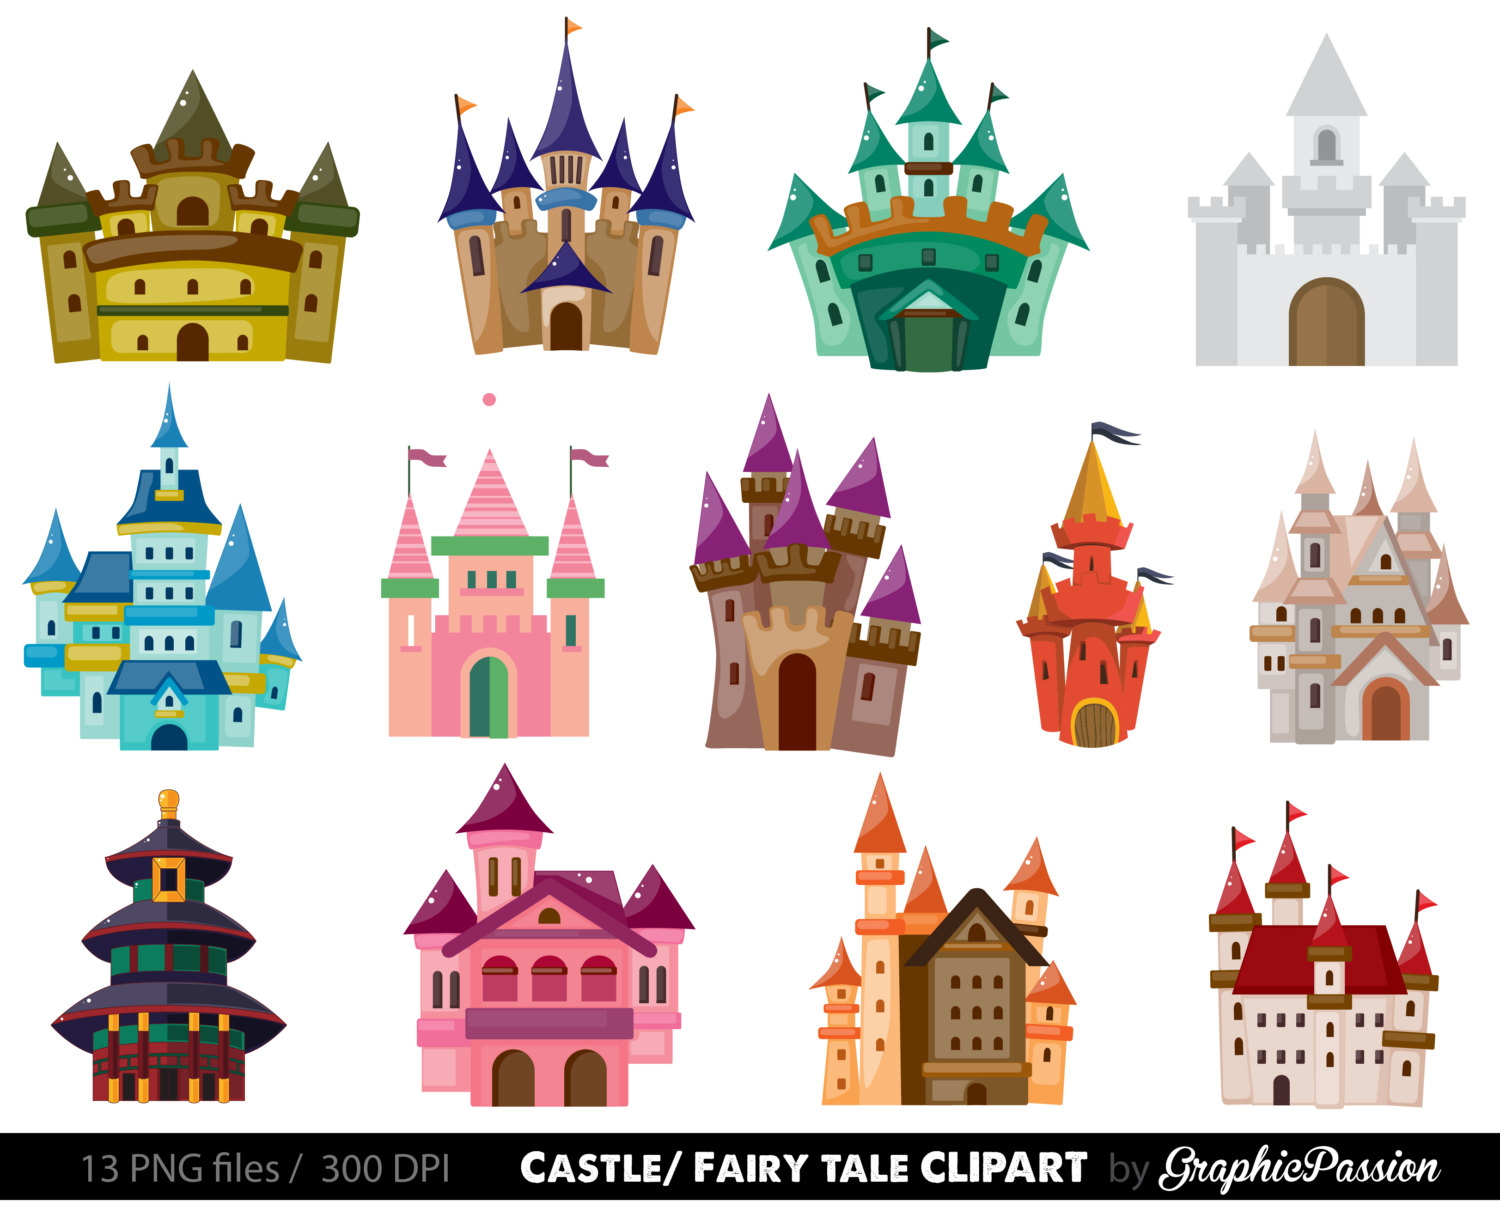 Castle Clip art. Kids Castle Clipart. Fairy Tale Clipart. Pink Castle Clipart INSTANT DOWNLOAD